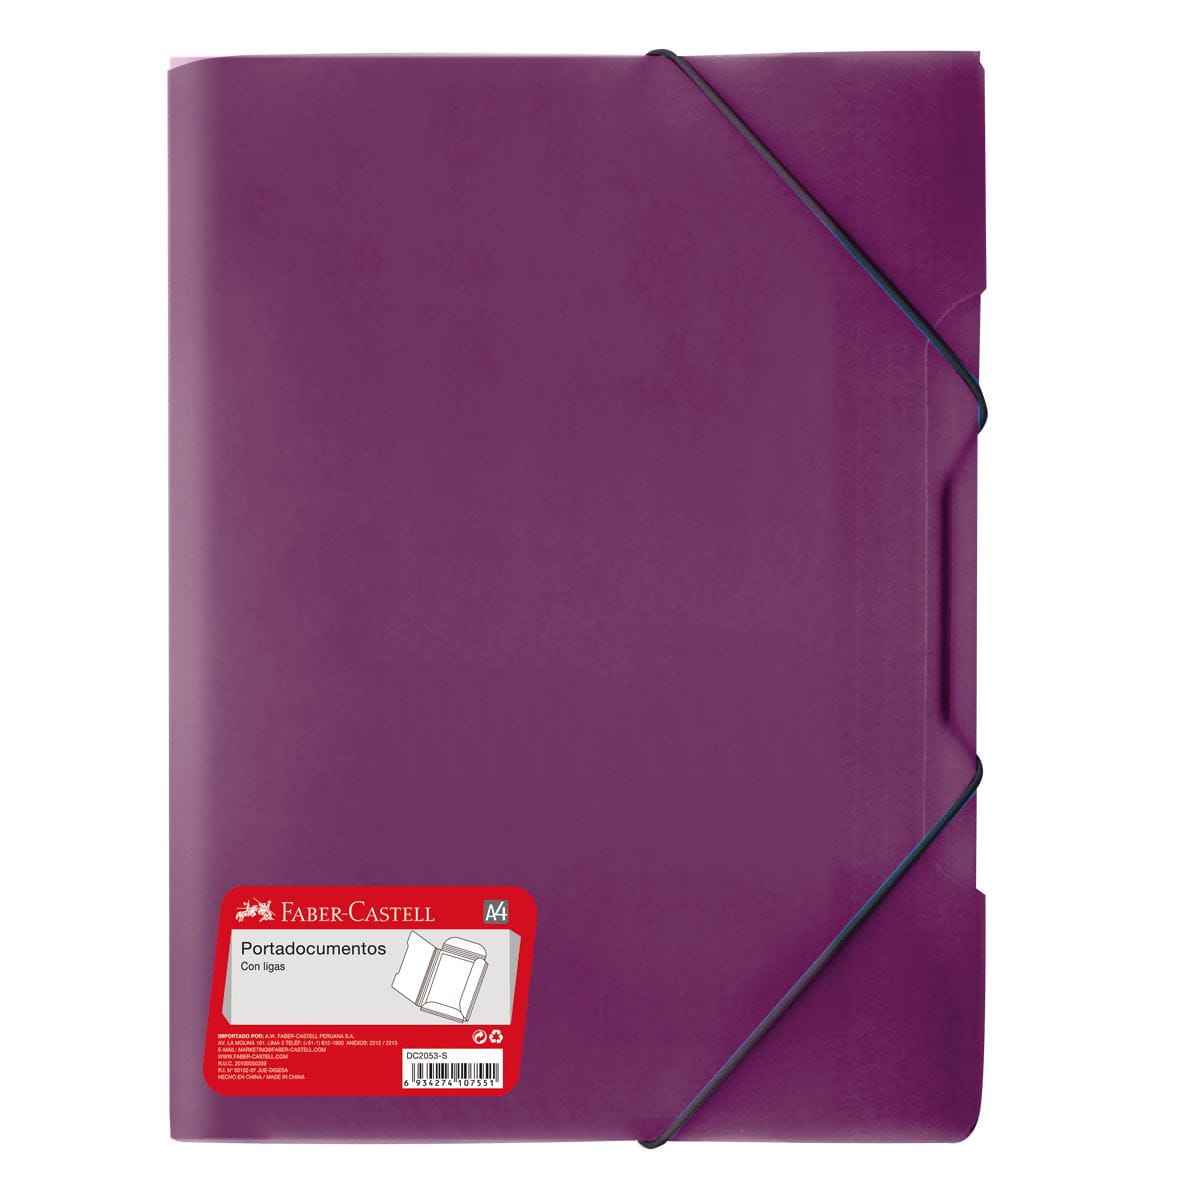 Faber-Castell - Porta doc DC2053-S A4 ligas violeta